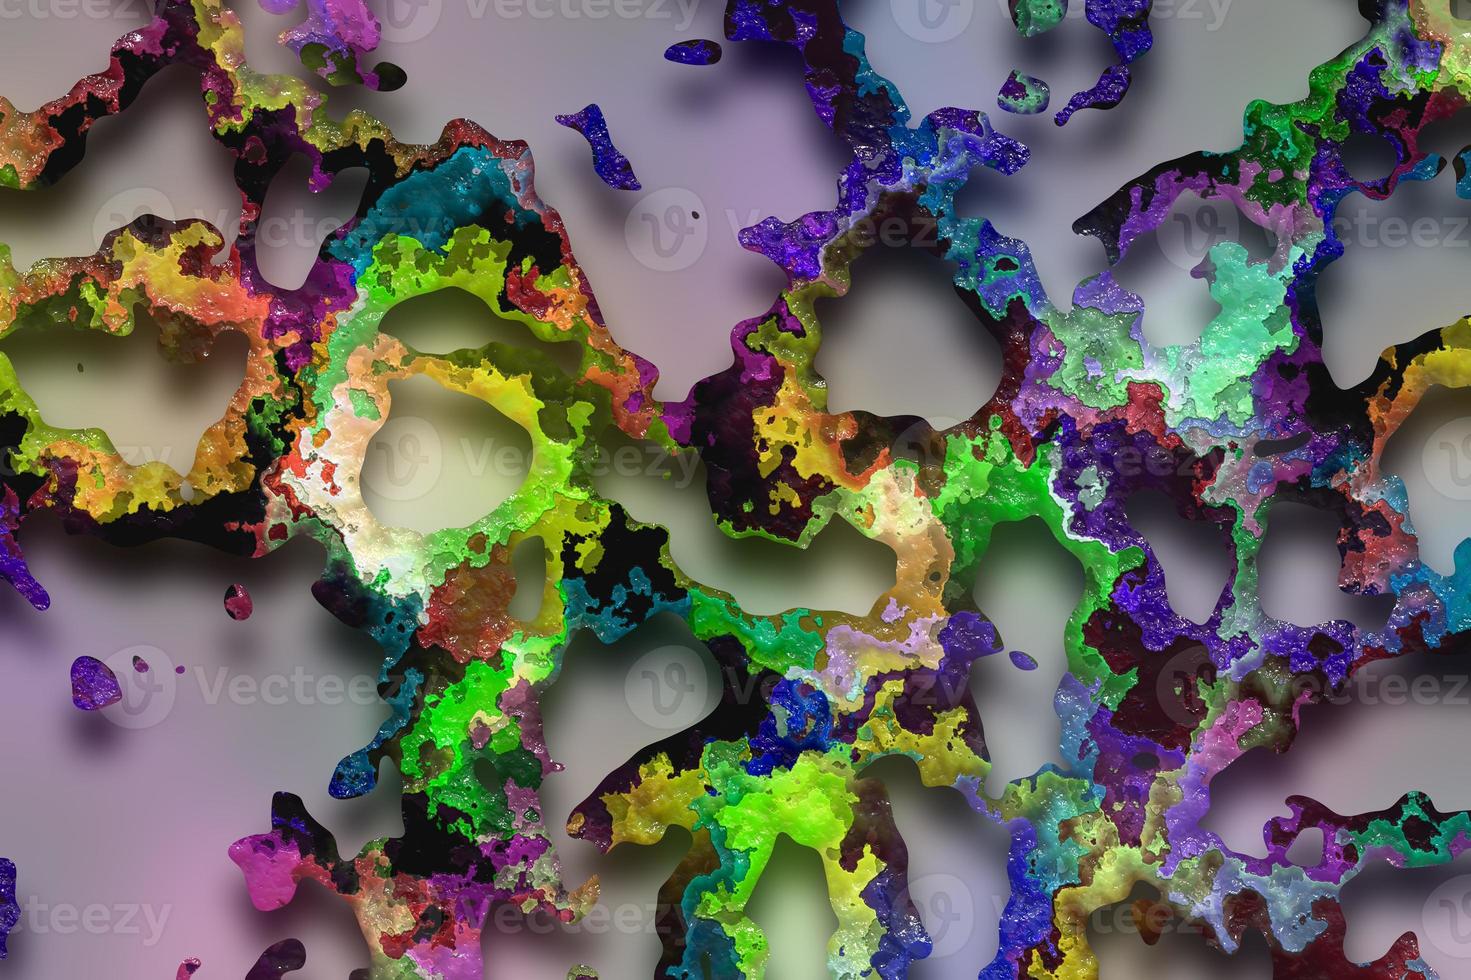 abstrakter 3D-Hintergrund mit Farbverlauf, holografische Textur, abstrakter flüssiger Hintergrund, geometrische Textur, digitale Hintergrundillustration foto